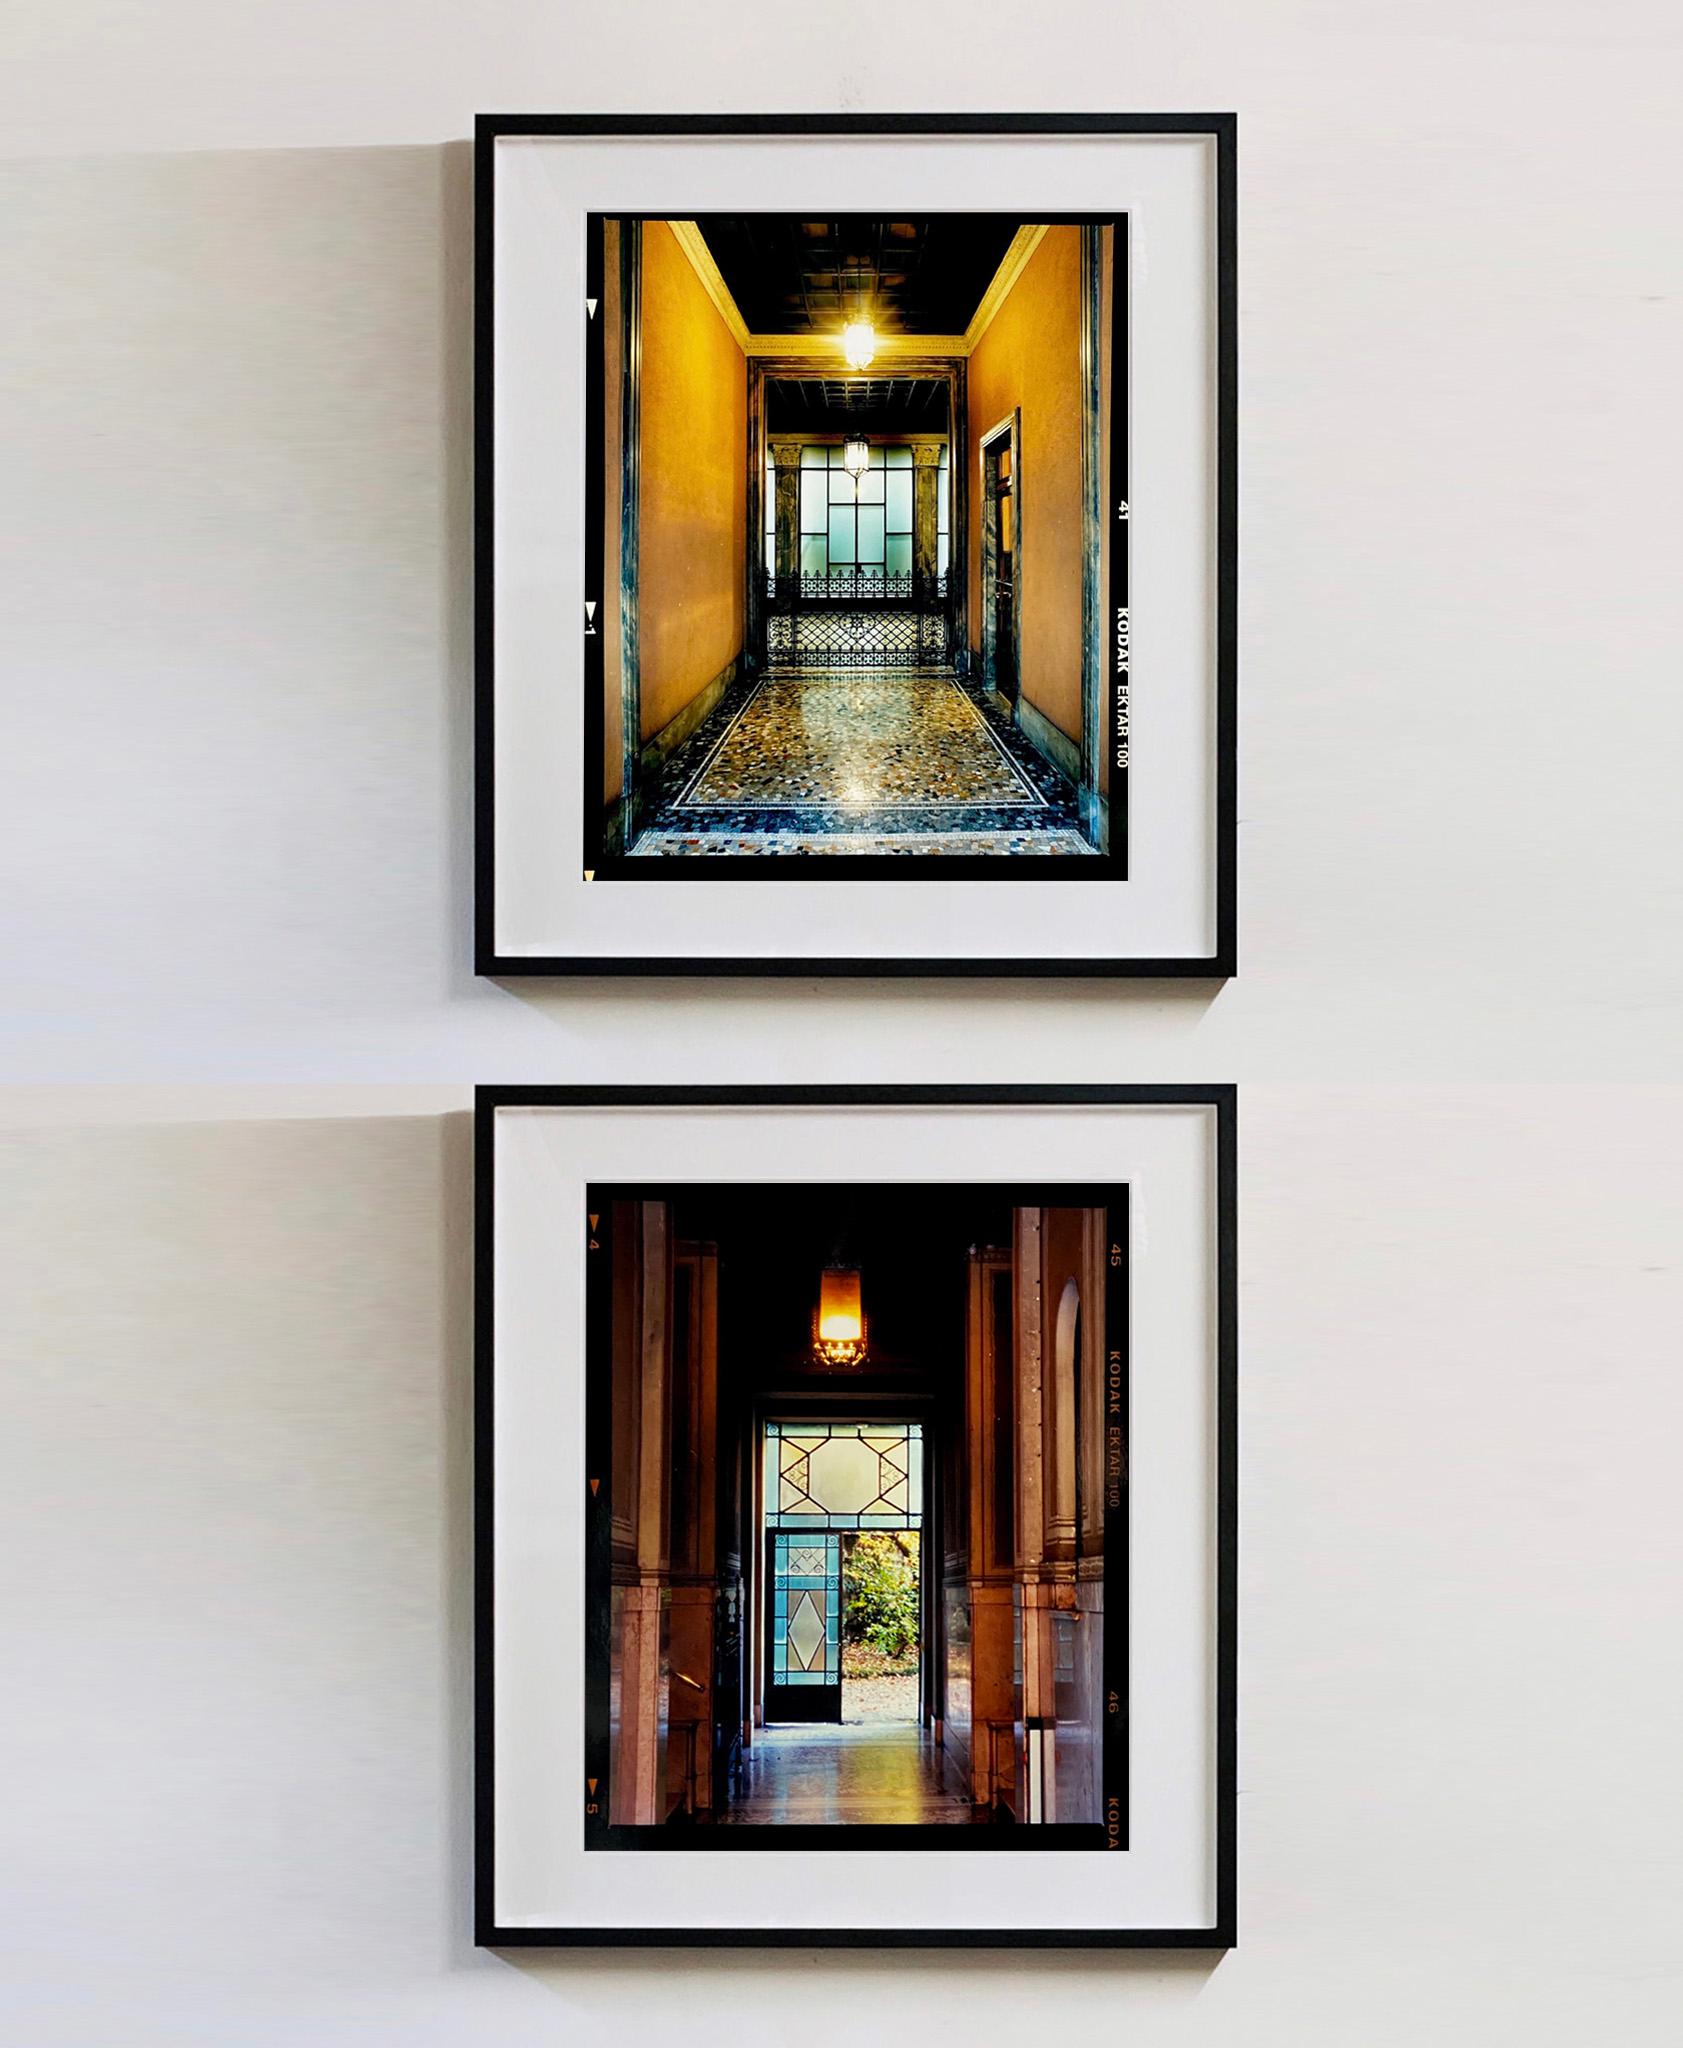 Foyer IV, Mailand – Architekturfotografie in Farbfotografie (Schwarz), Color Photograph, von Richard Heeps